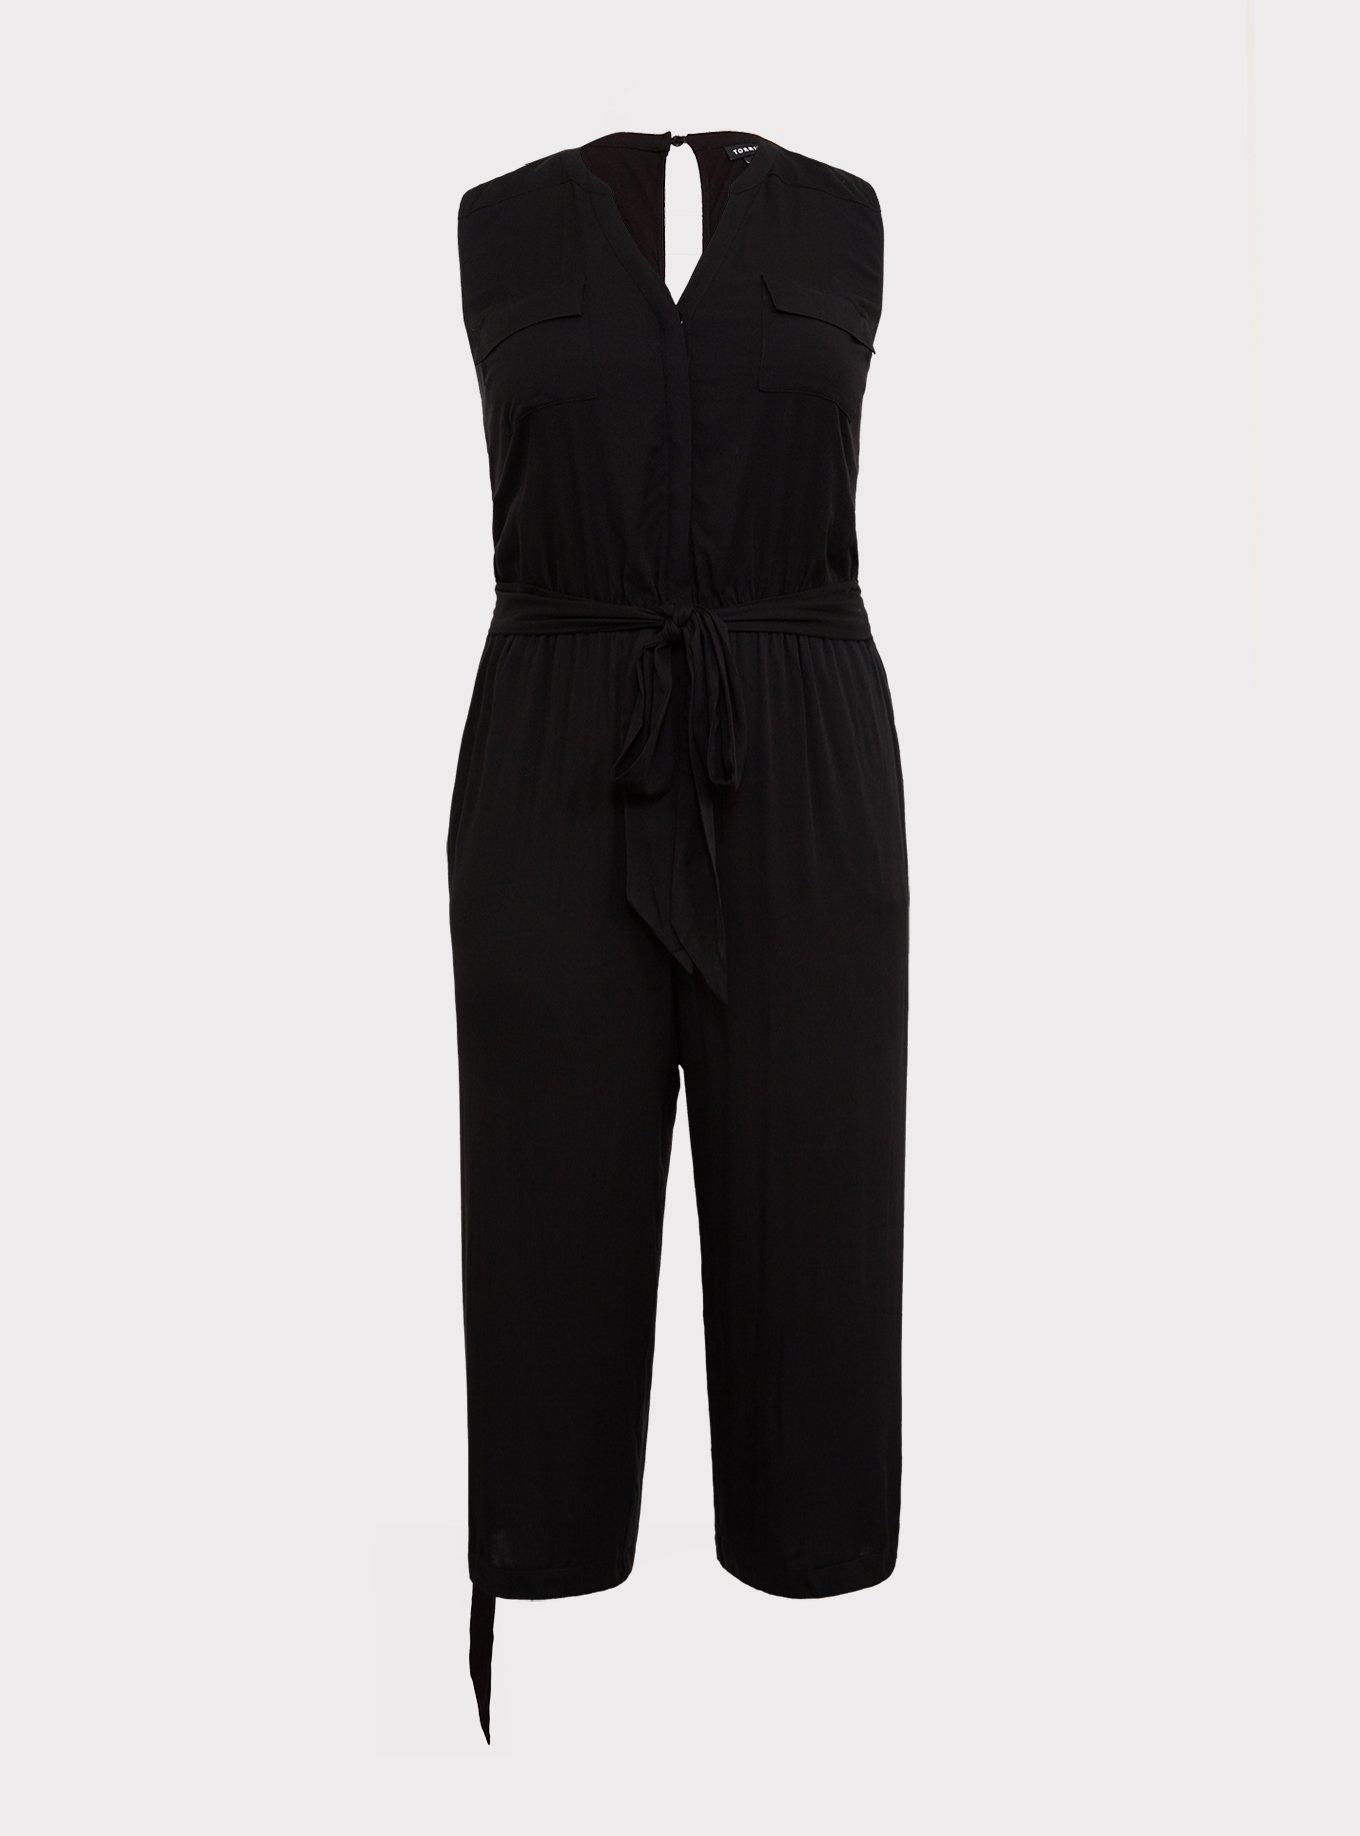 Plus Size - Harper - Black Challis Culotte Jumpsuit - Torrid